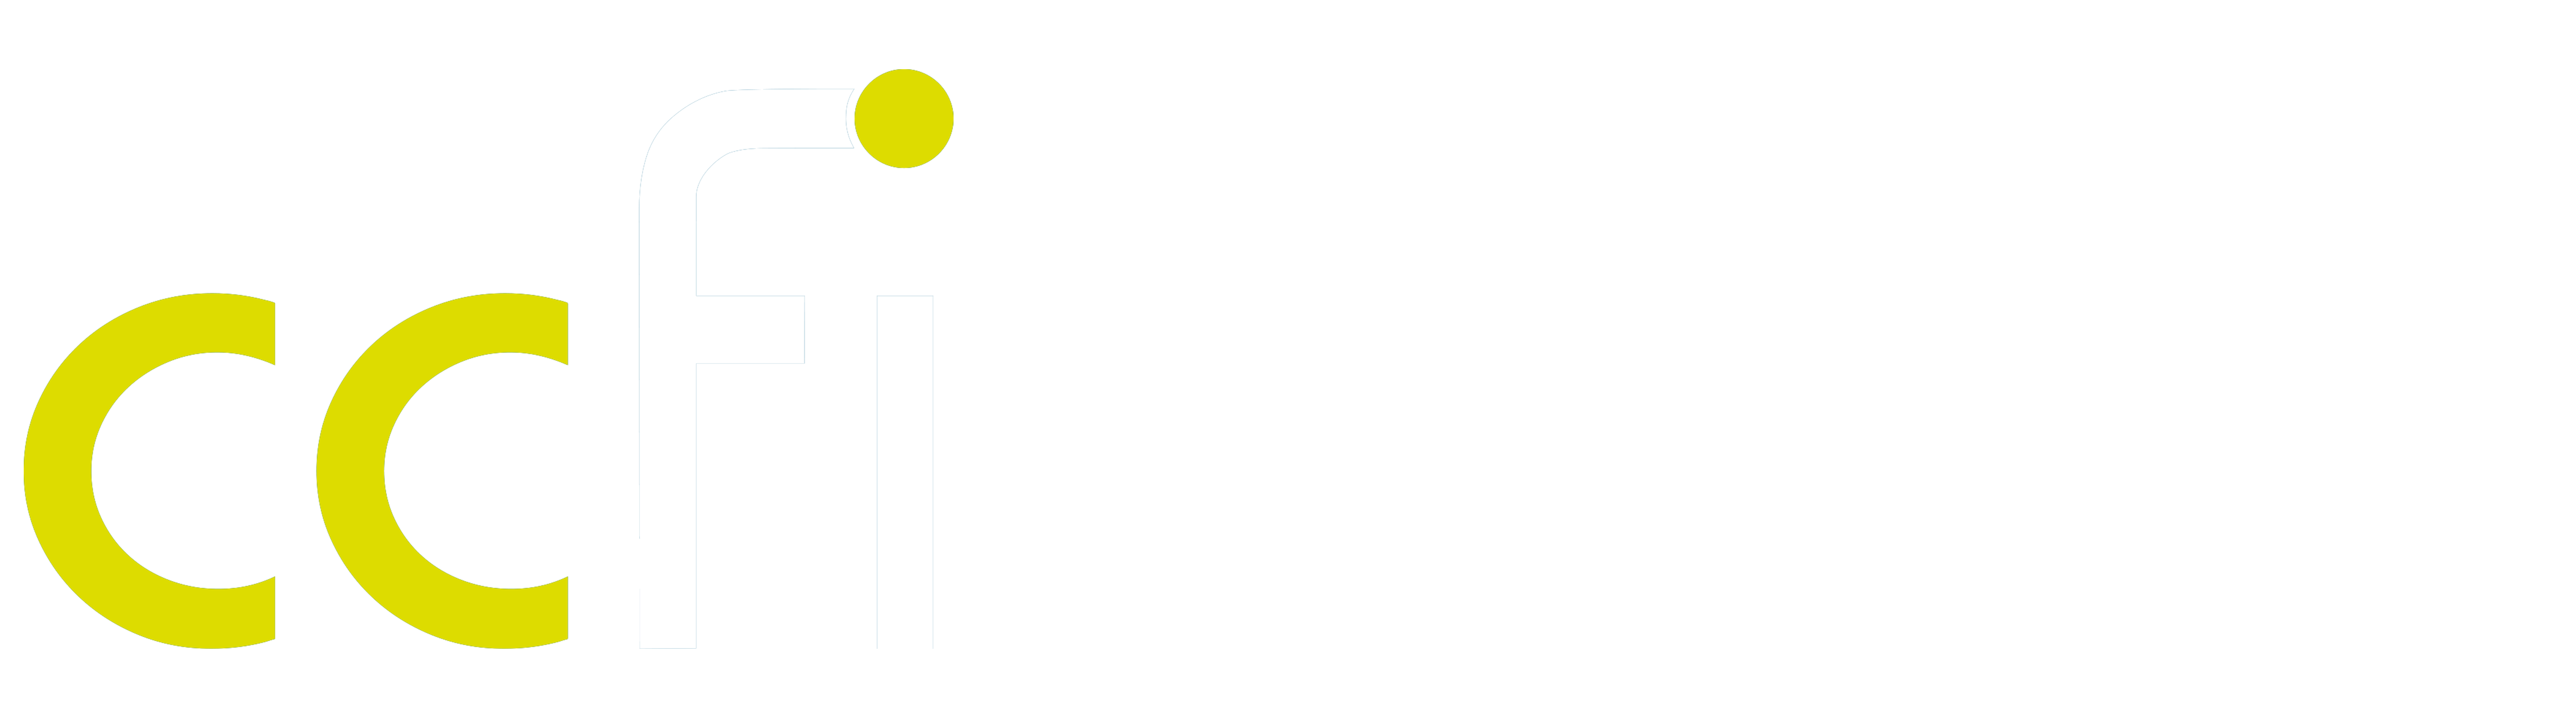 Communauté de communes de Flandre intérieure